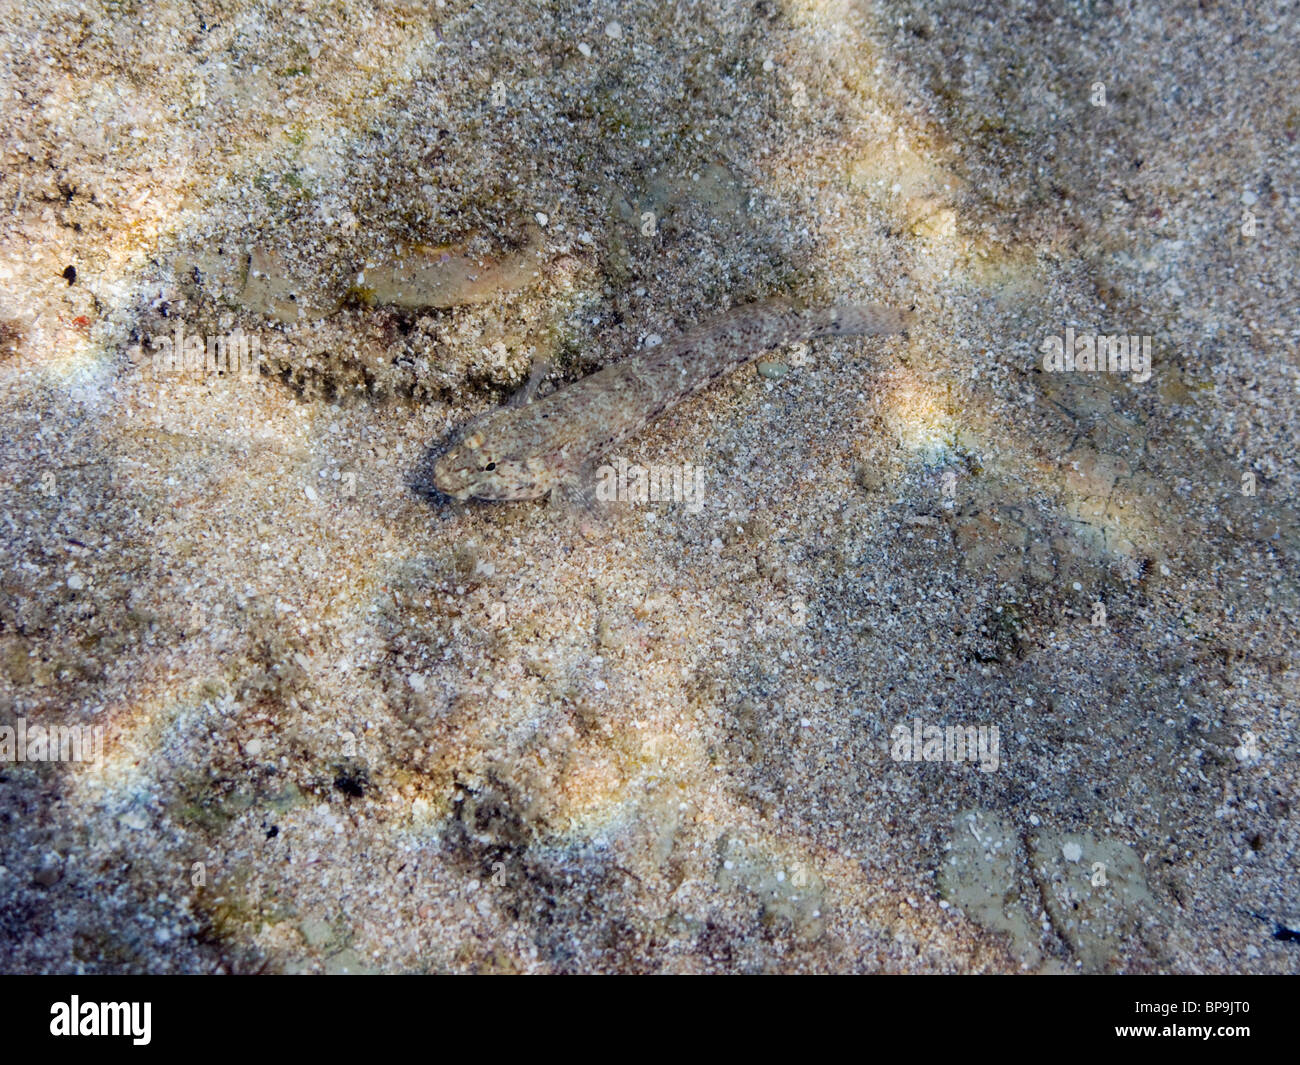 Ein kleiner Fisch, getarnt wie Sand auf dem Boden des Mittelmeers. Stockfoto